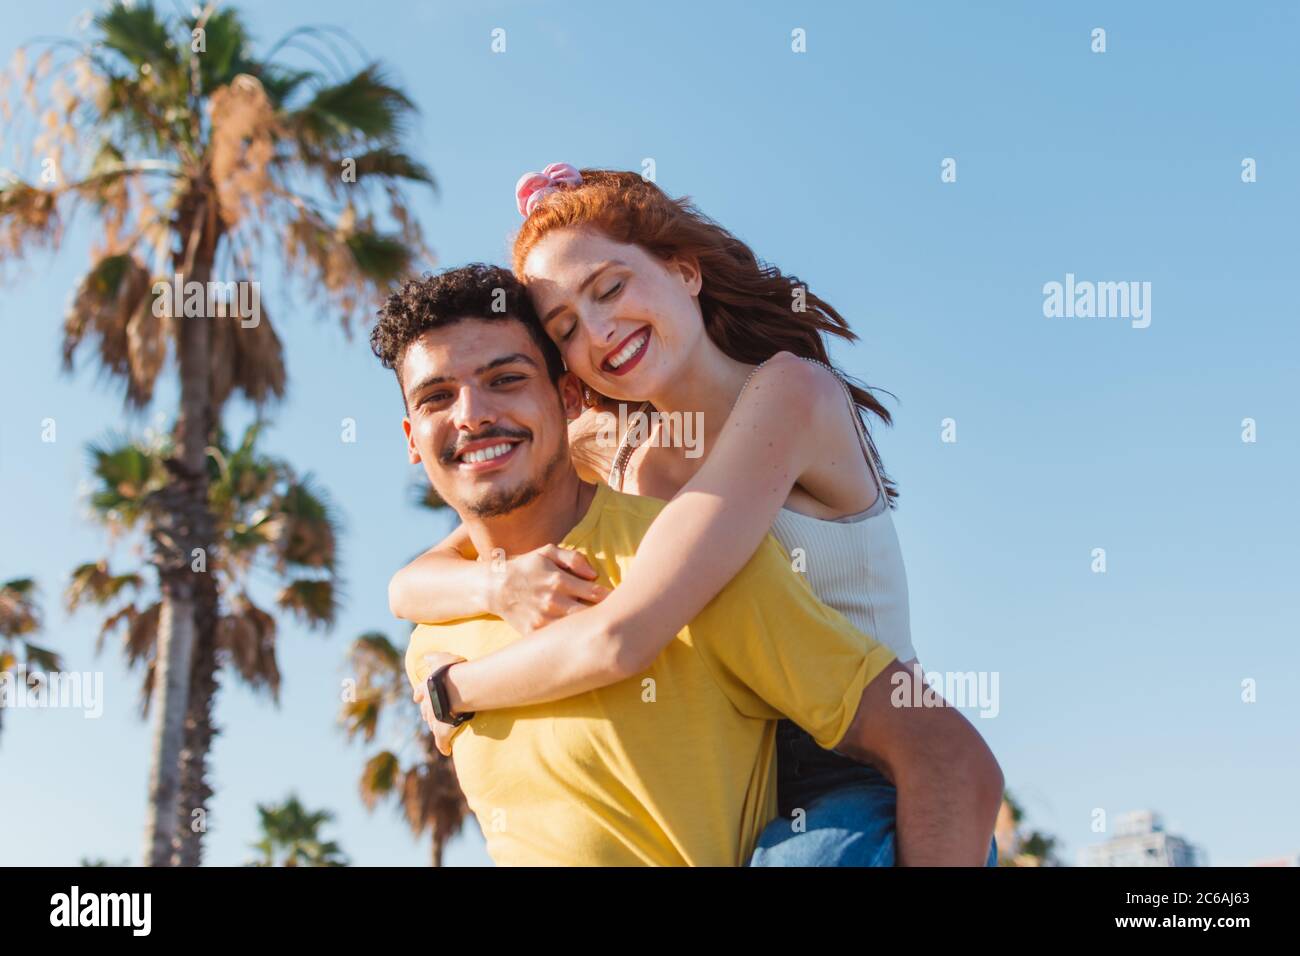 il giovane porta la sua ragazza sulla schiena mentre sorride Foto Stock